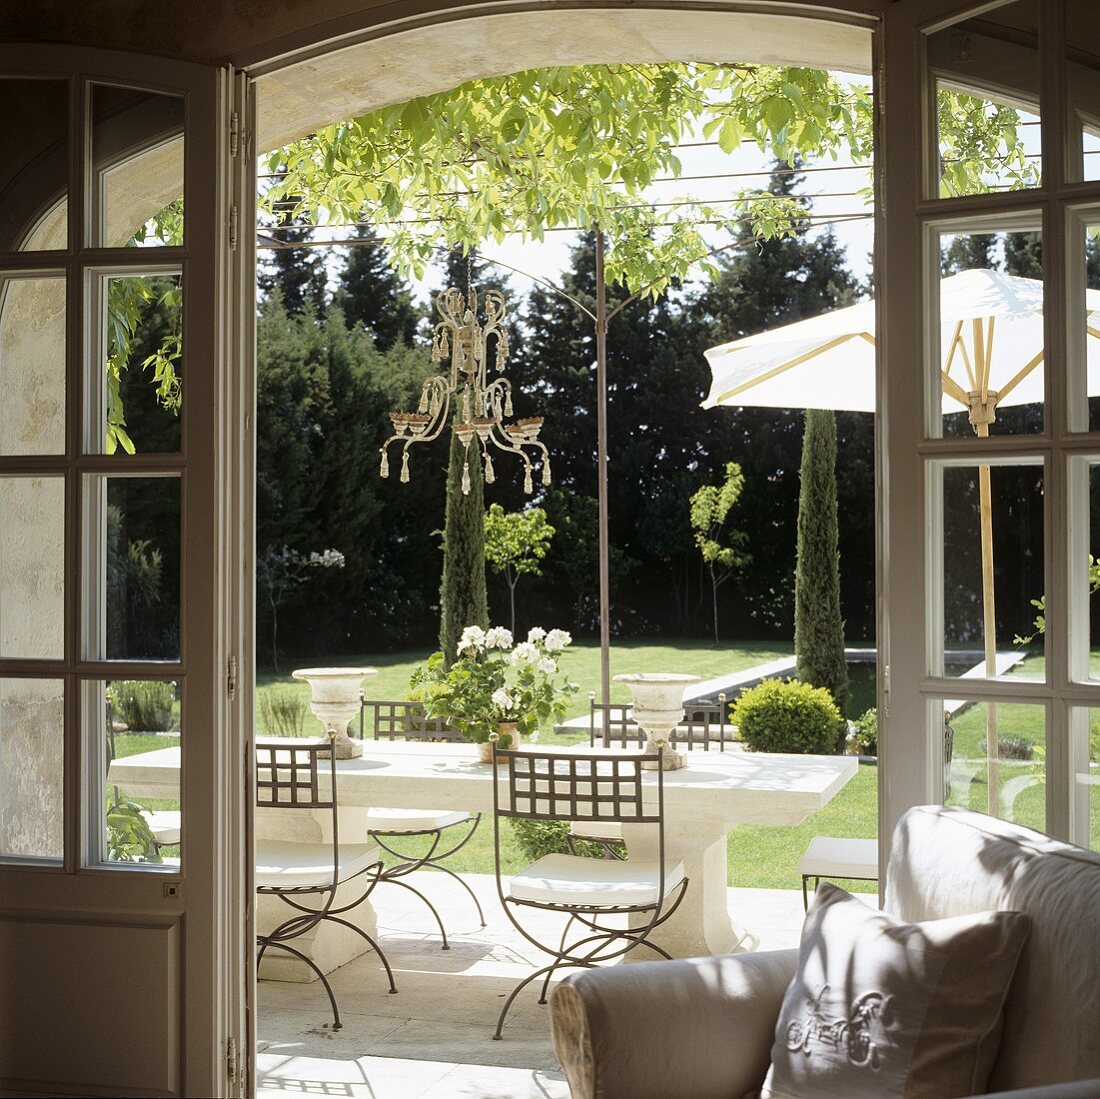 A view through an open terrace door onto elegant outdoor furniture and a Mediterranean garden